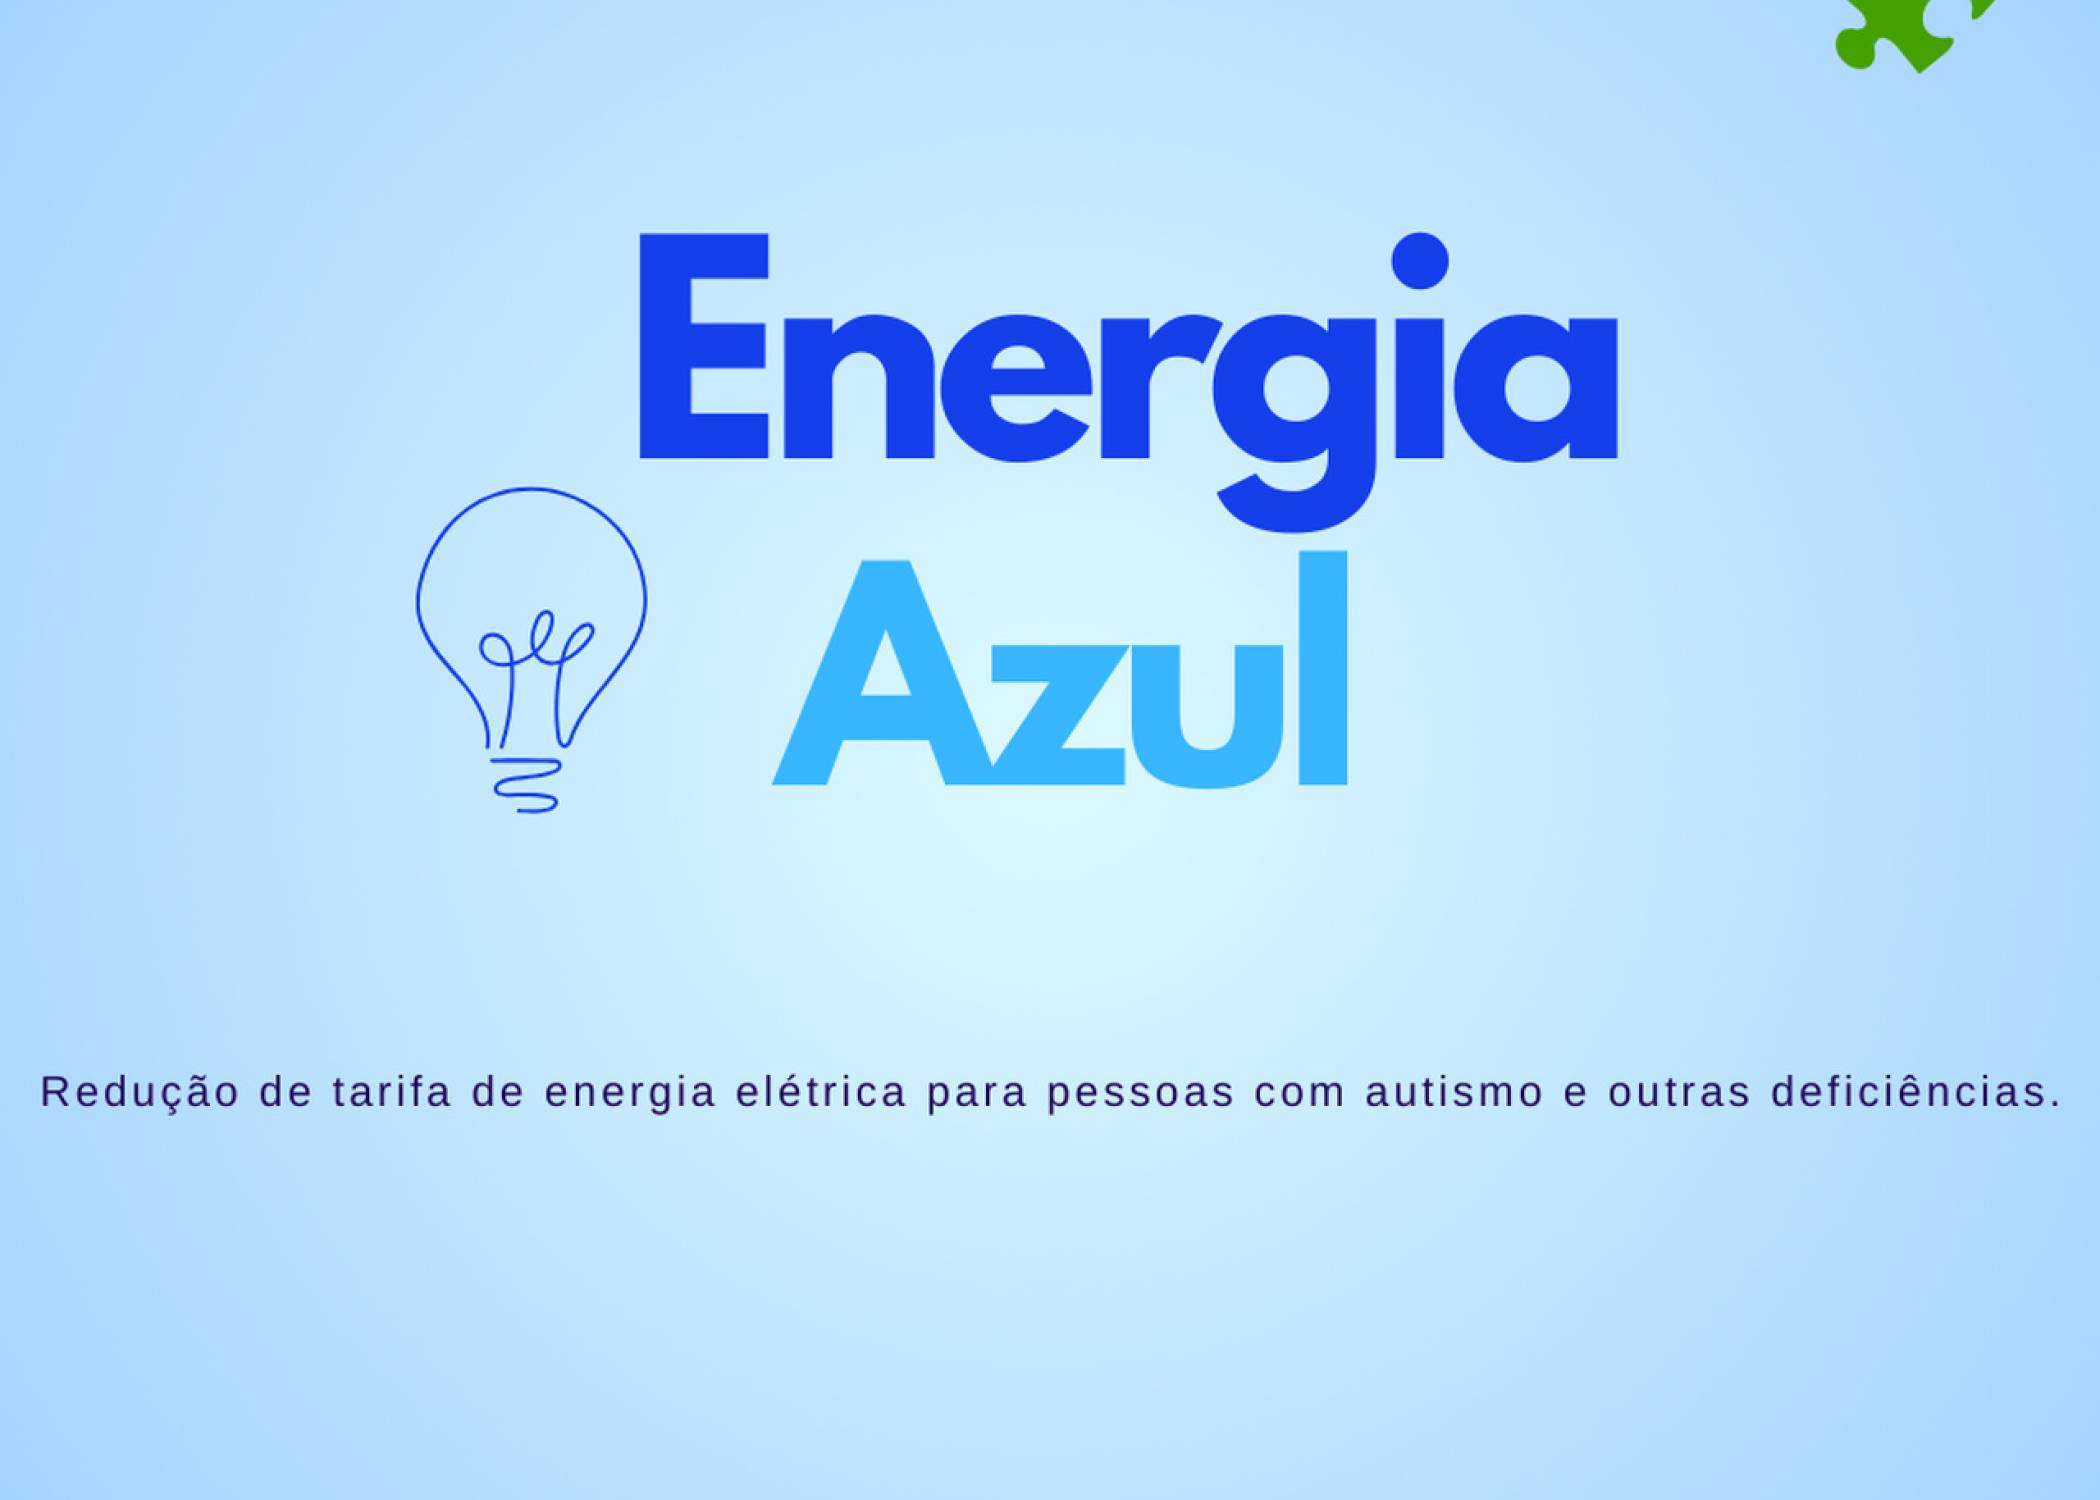 Programa Energia Azul - redução na tarifa de energia elétrica para pessoas com autismo e outras deficiências.